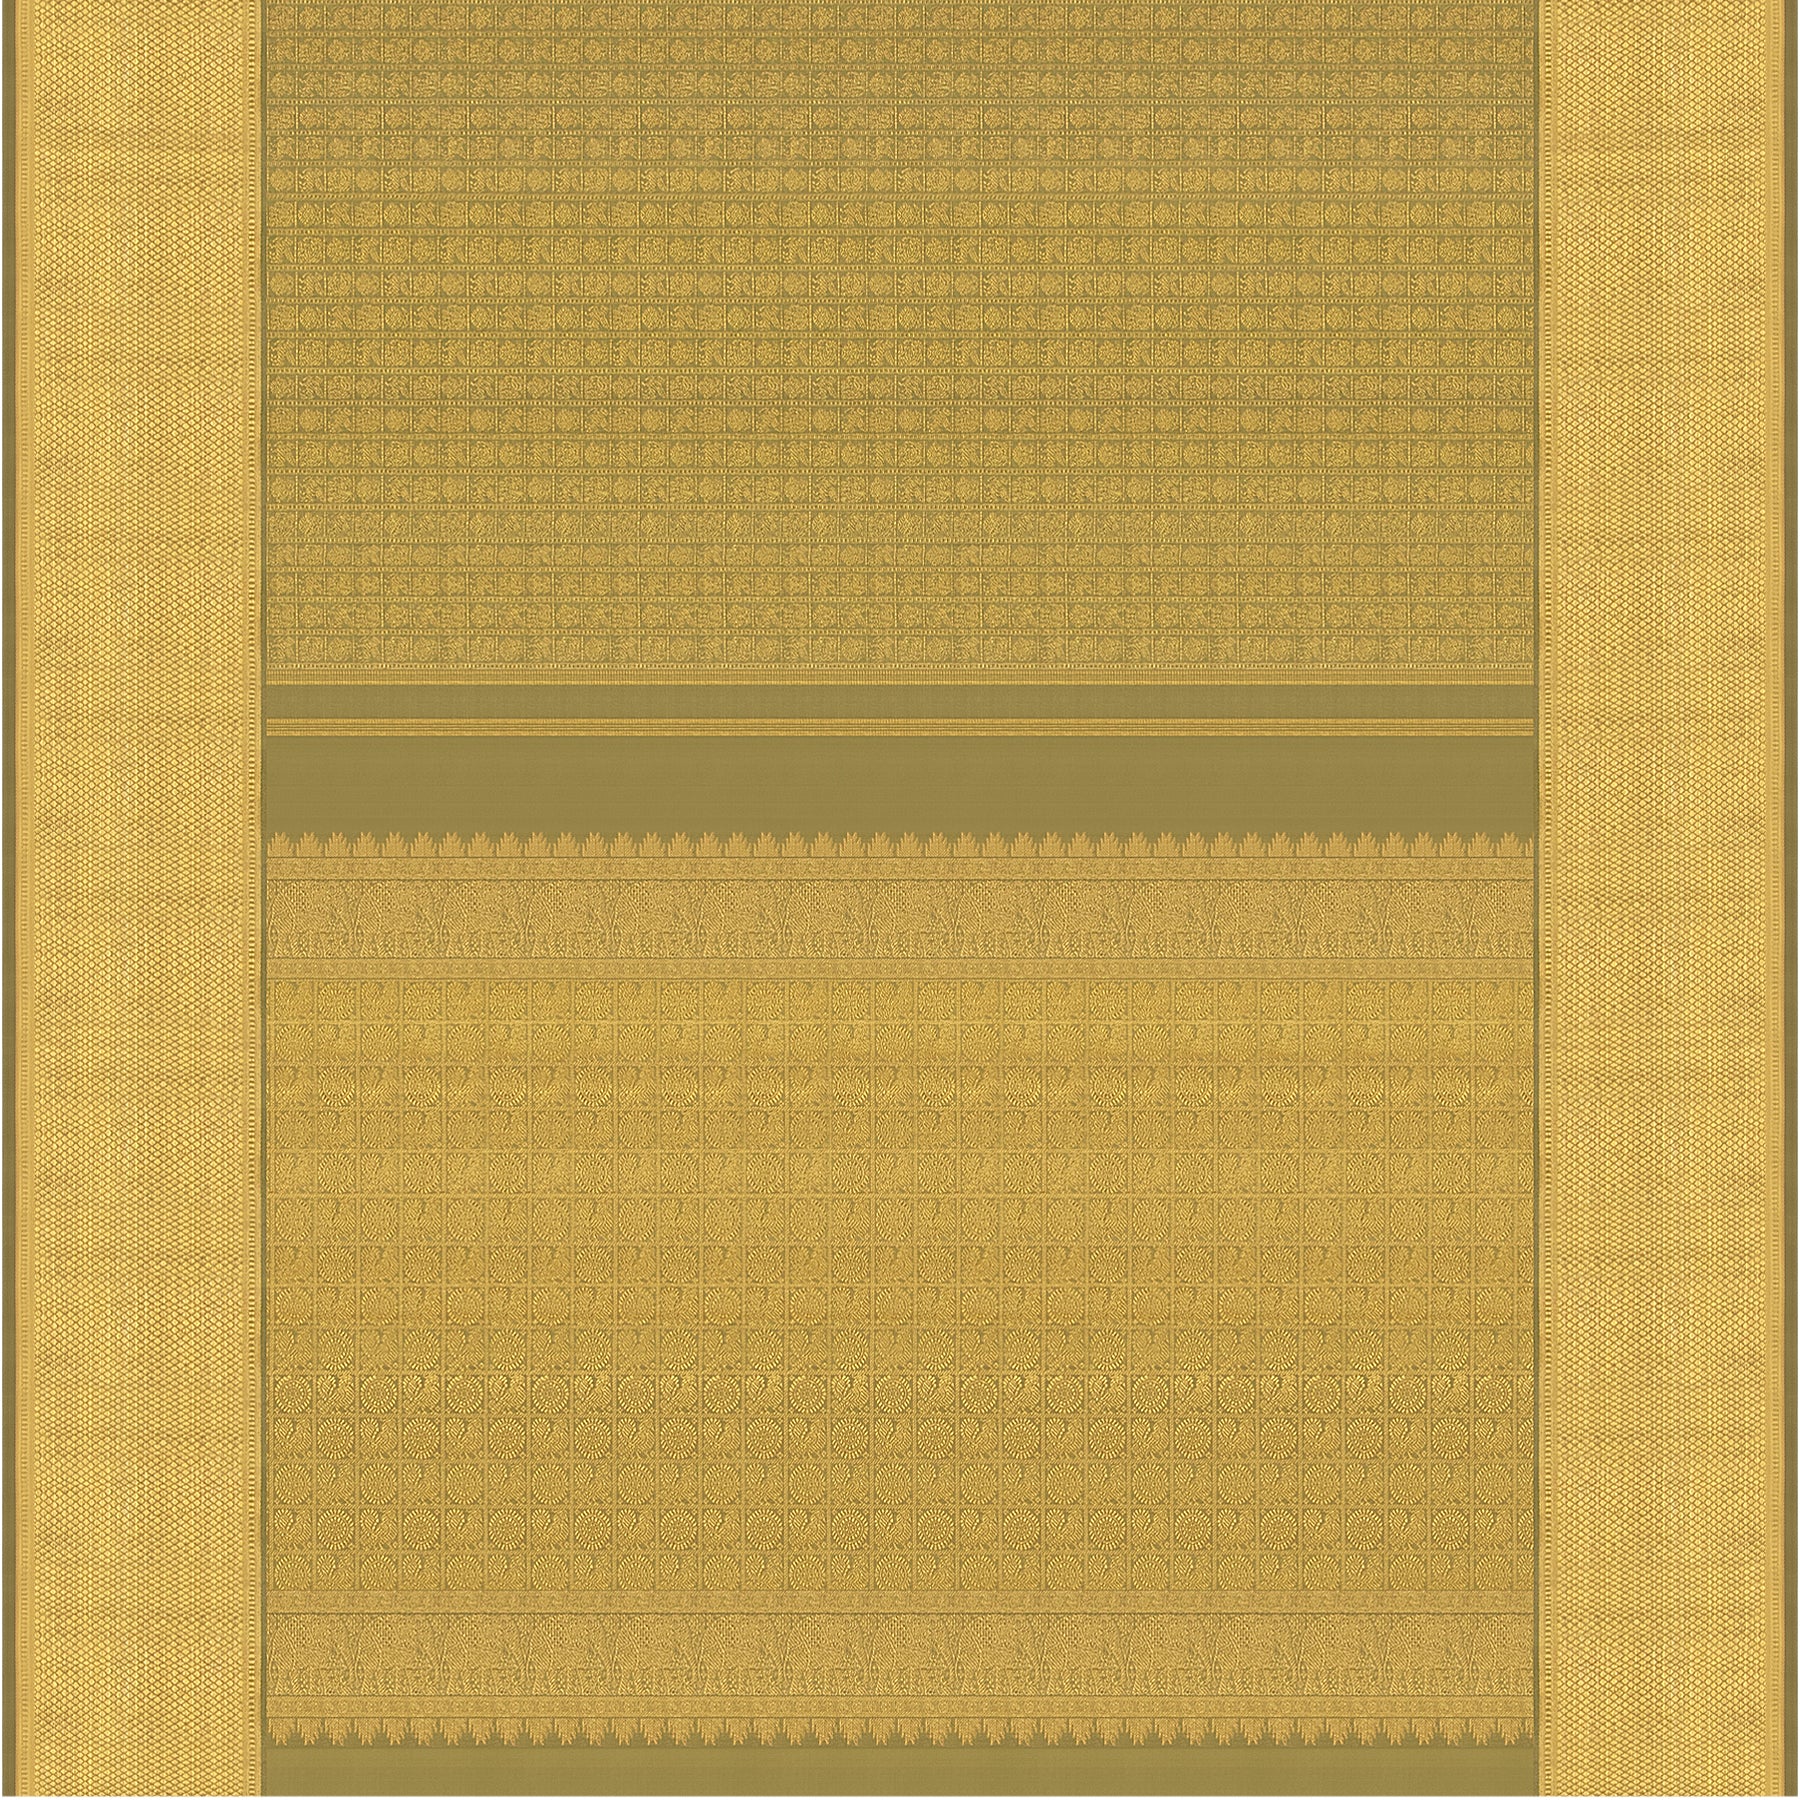 Kanakavalli Kanjivaram Silk Sari 22-110-HS001-10355 - Full View